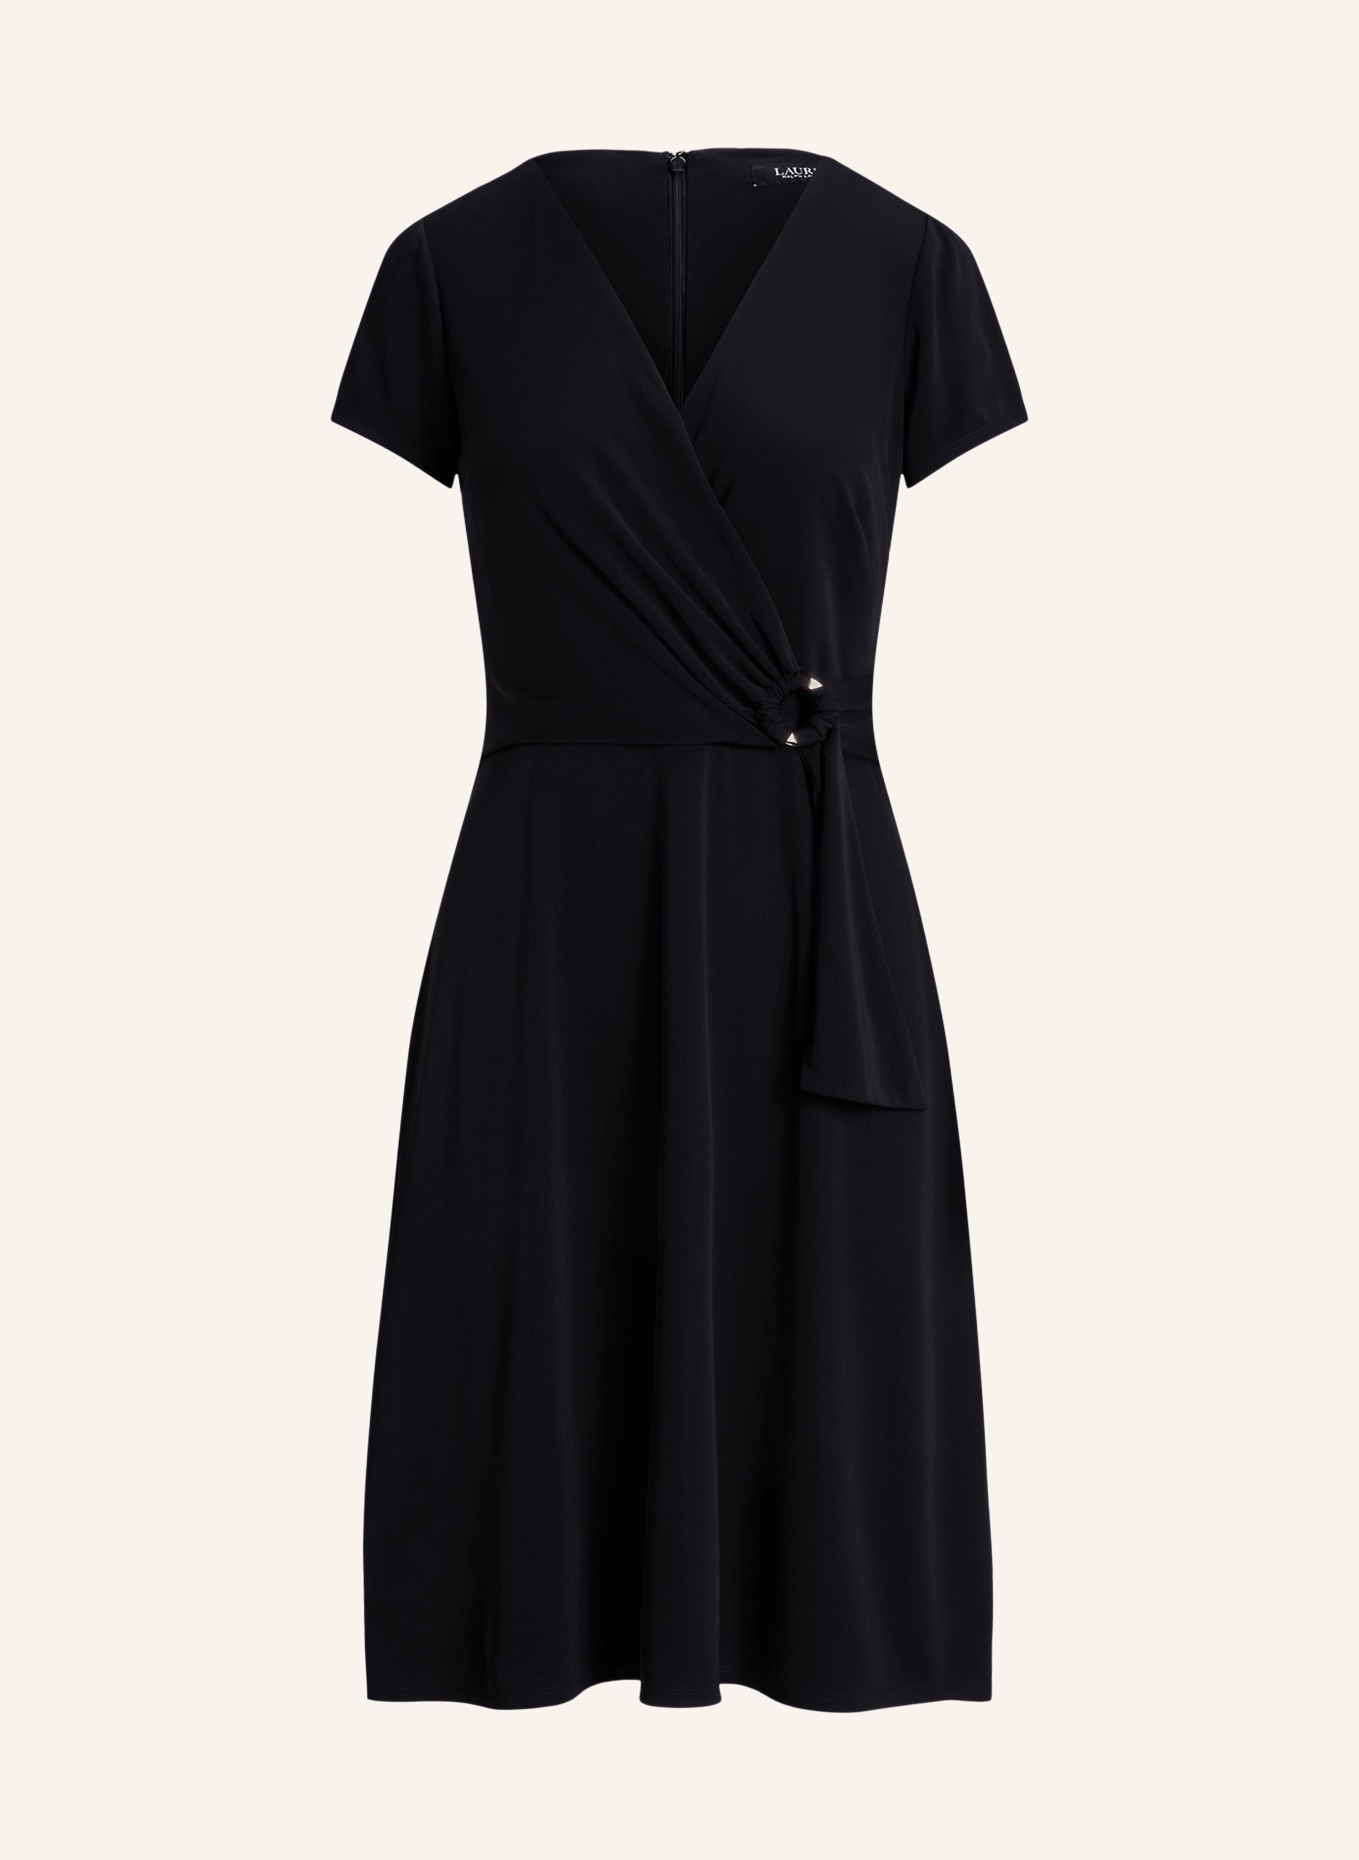 LAUREN RALPH LAUREN Jersey dress in wrap look, Color: BLACK (Image 1)